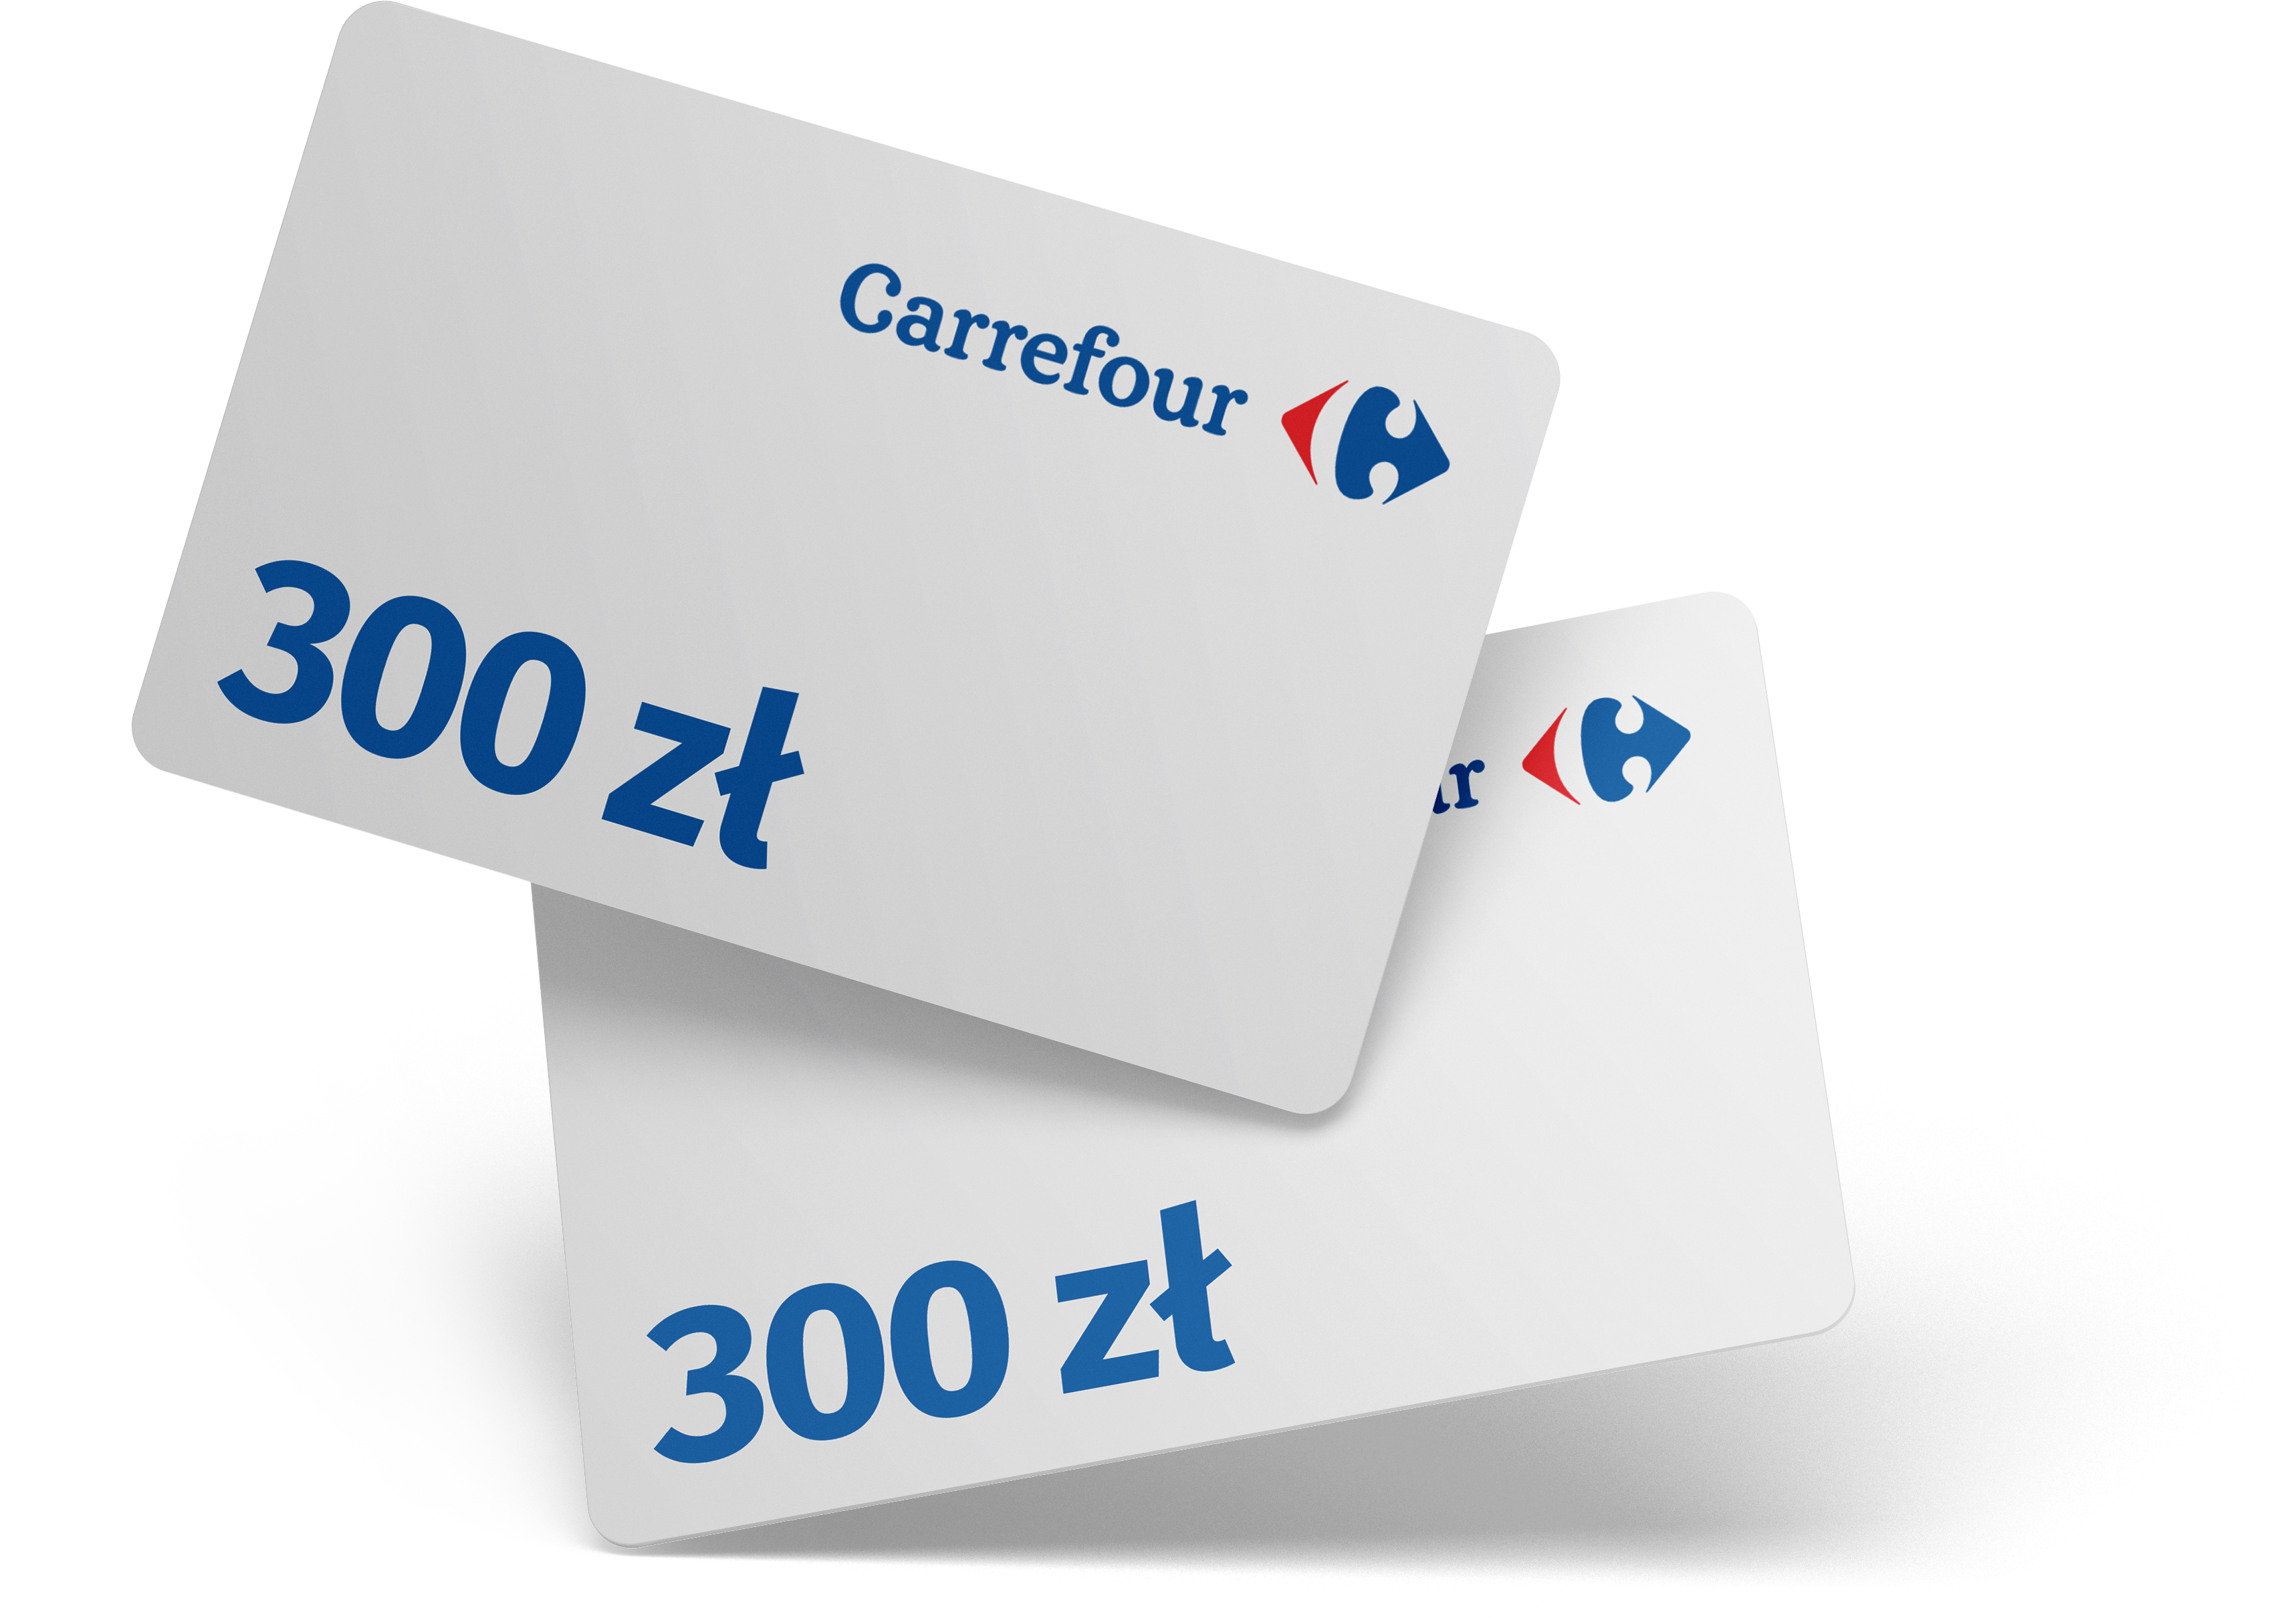 BPS Karta Carrefour 300zl v1 TF